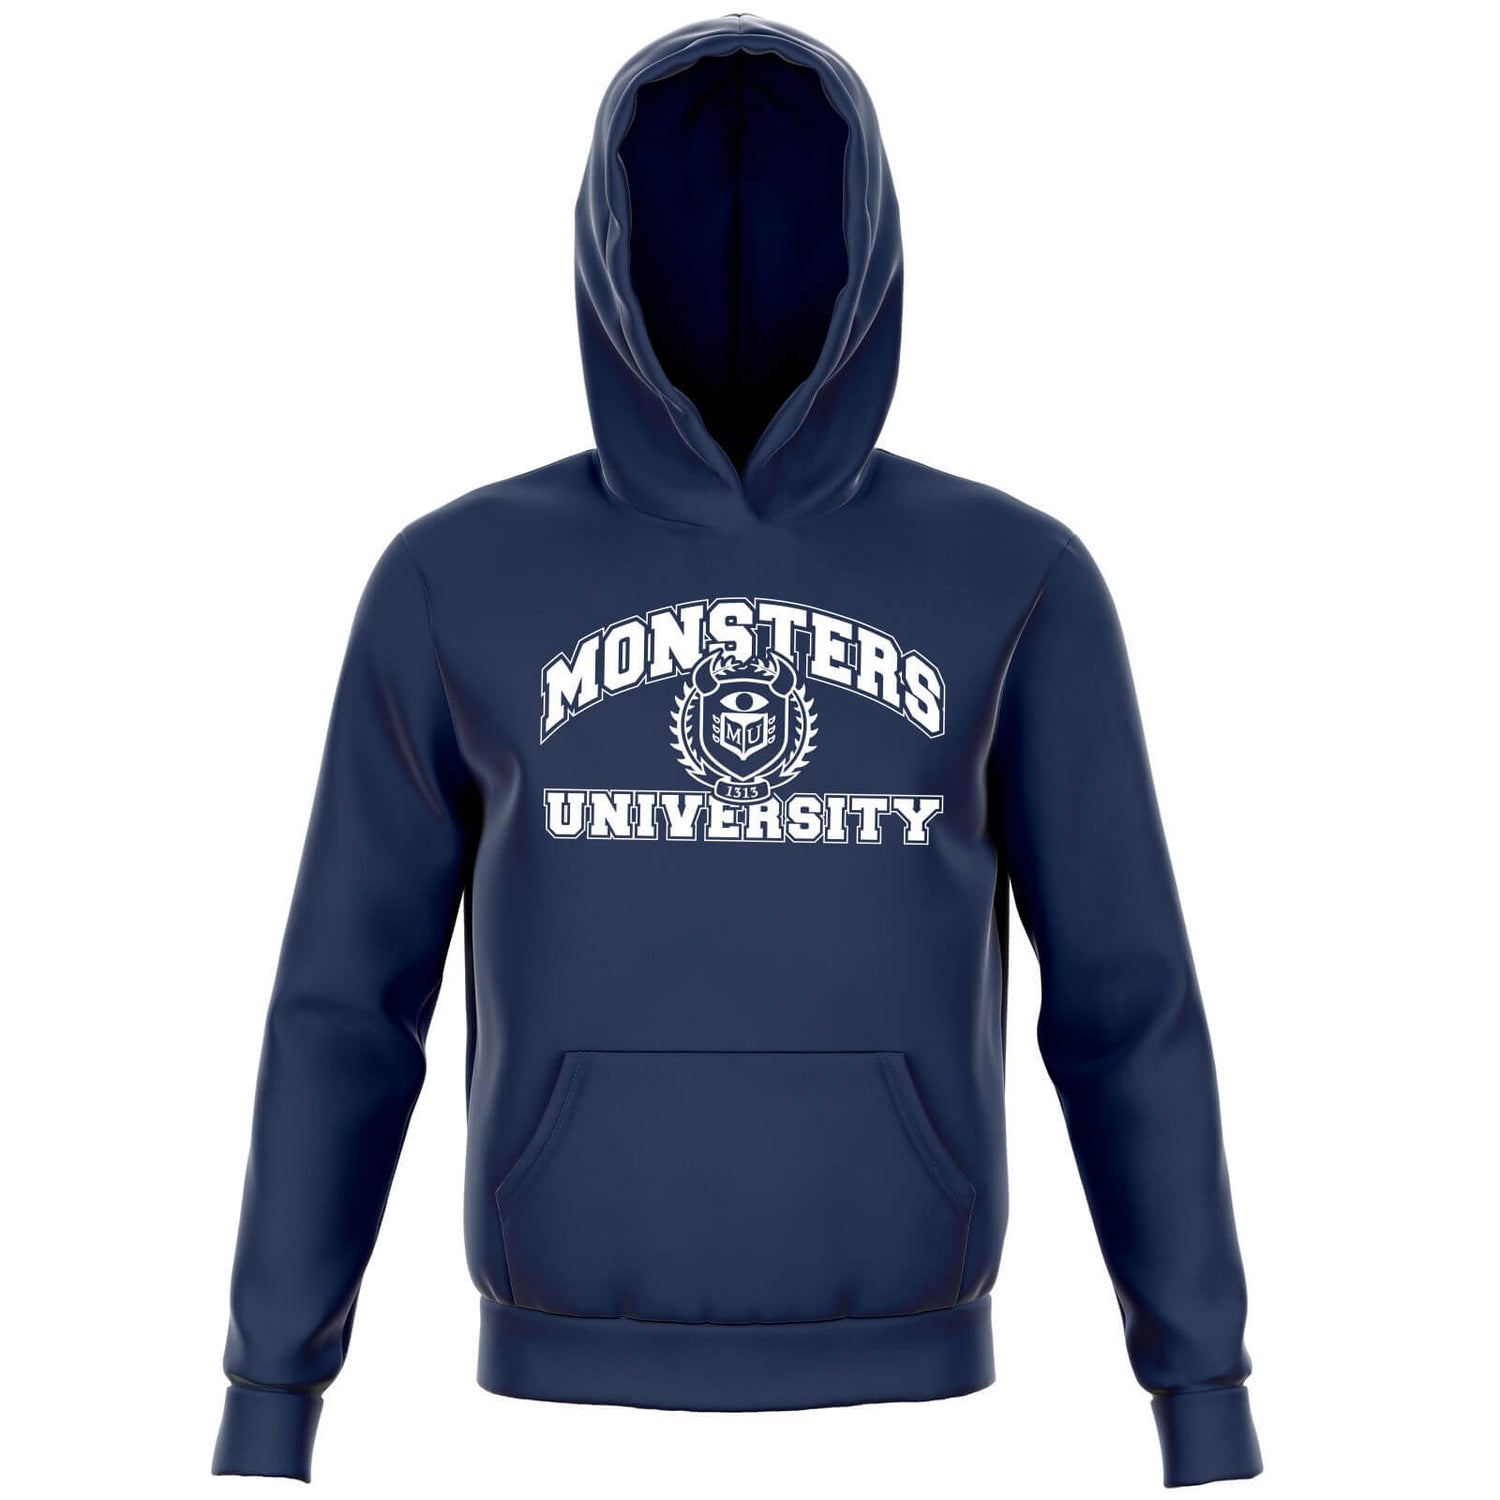 Monsters Inc. Monsters University Student Kids' Hoodie - Navy